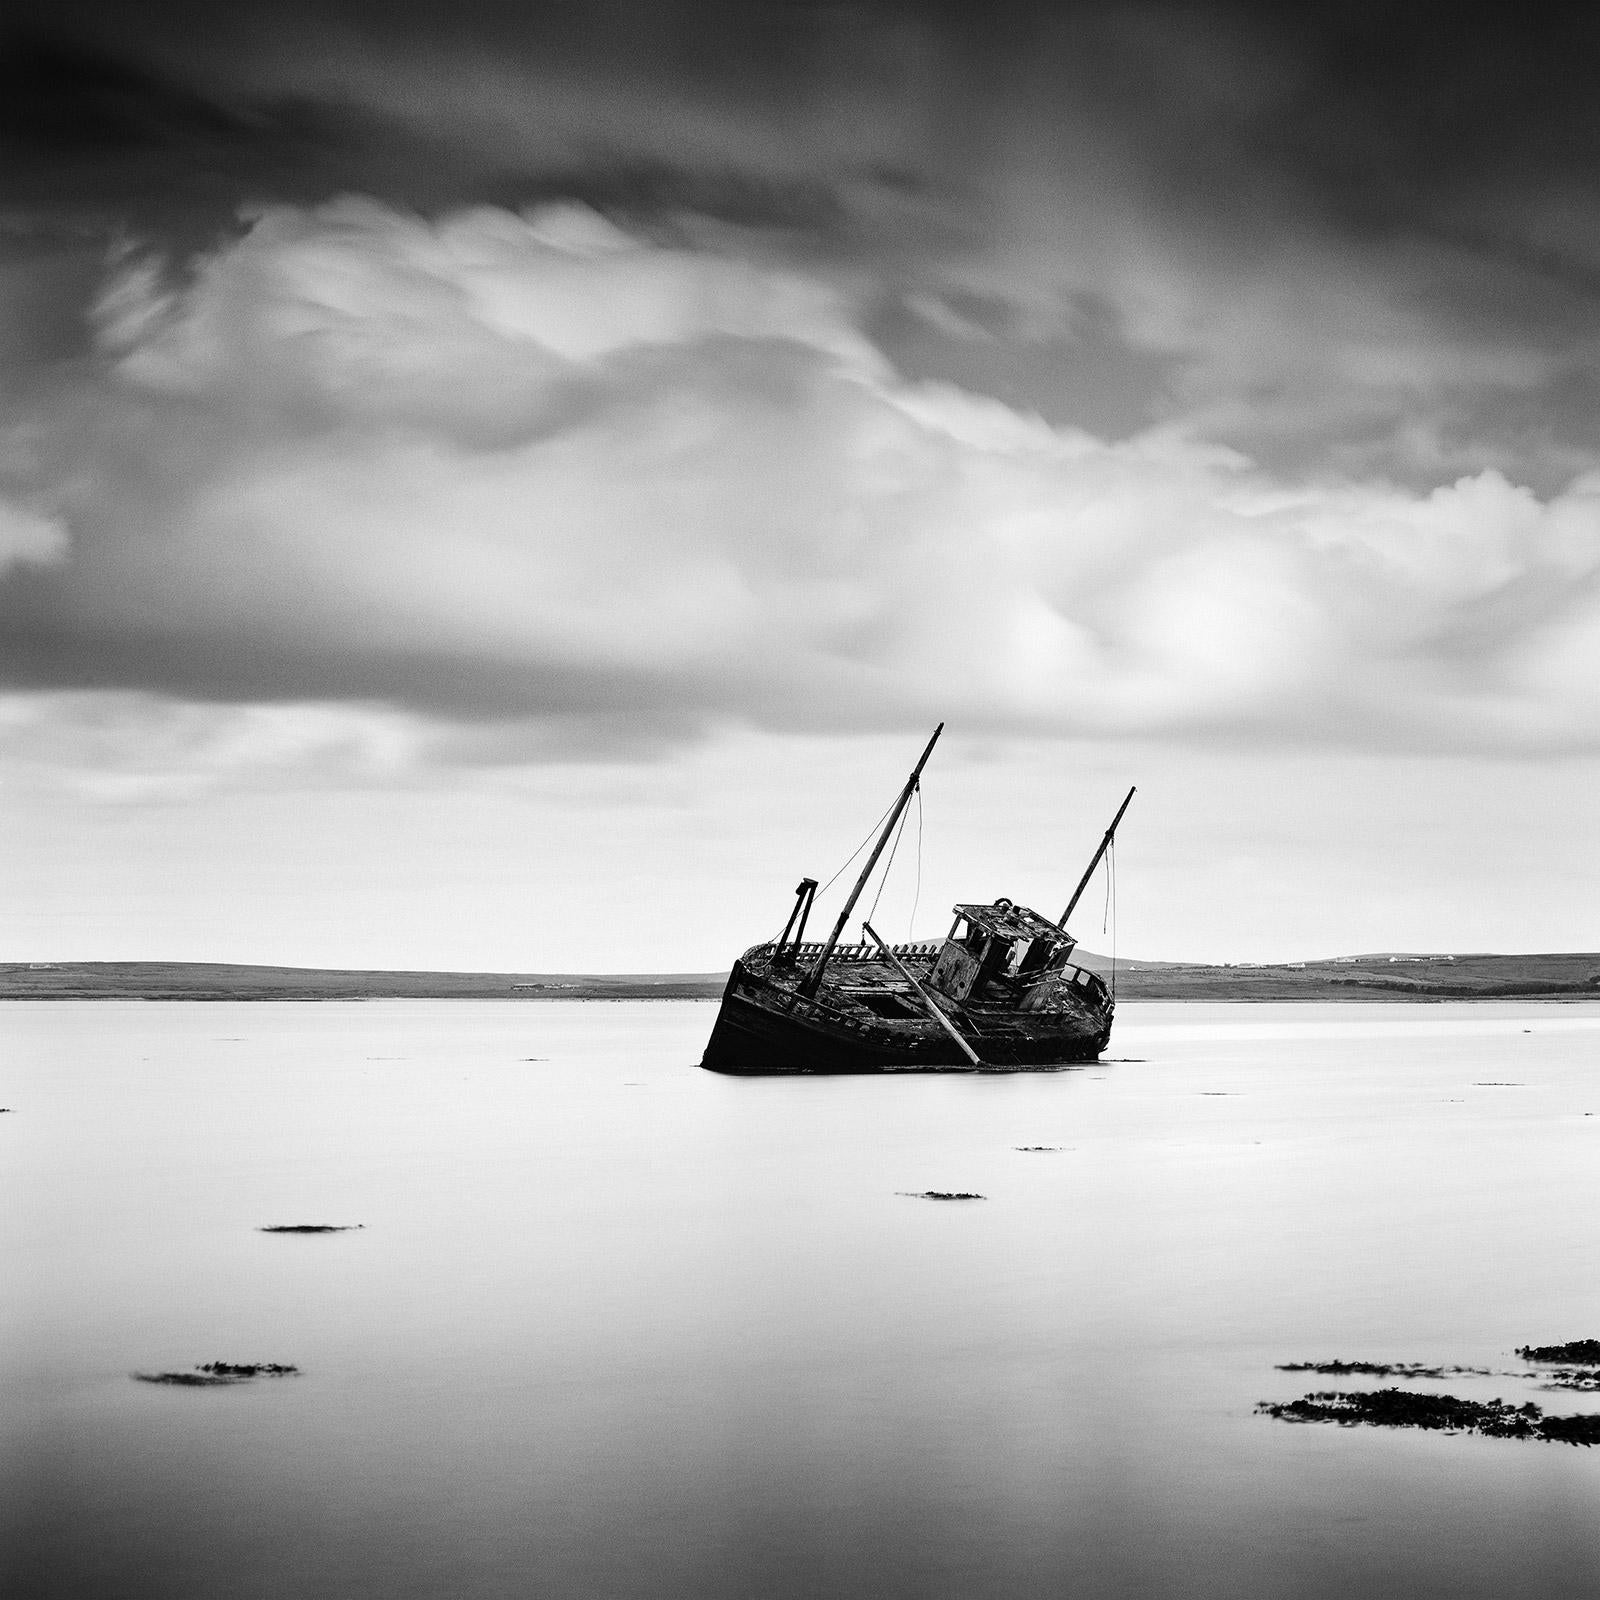 Black and White Photograph Gerald Berghammer - Bateau de pêche échoué, plage, Irlande, photographie noir et blanc, paysage